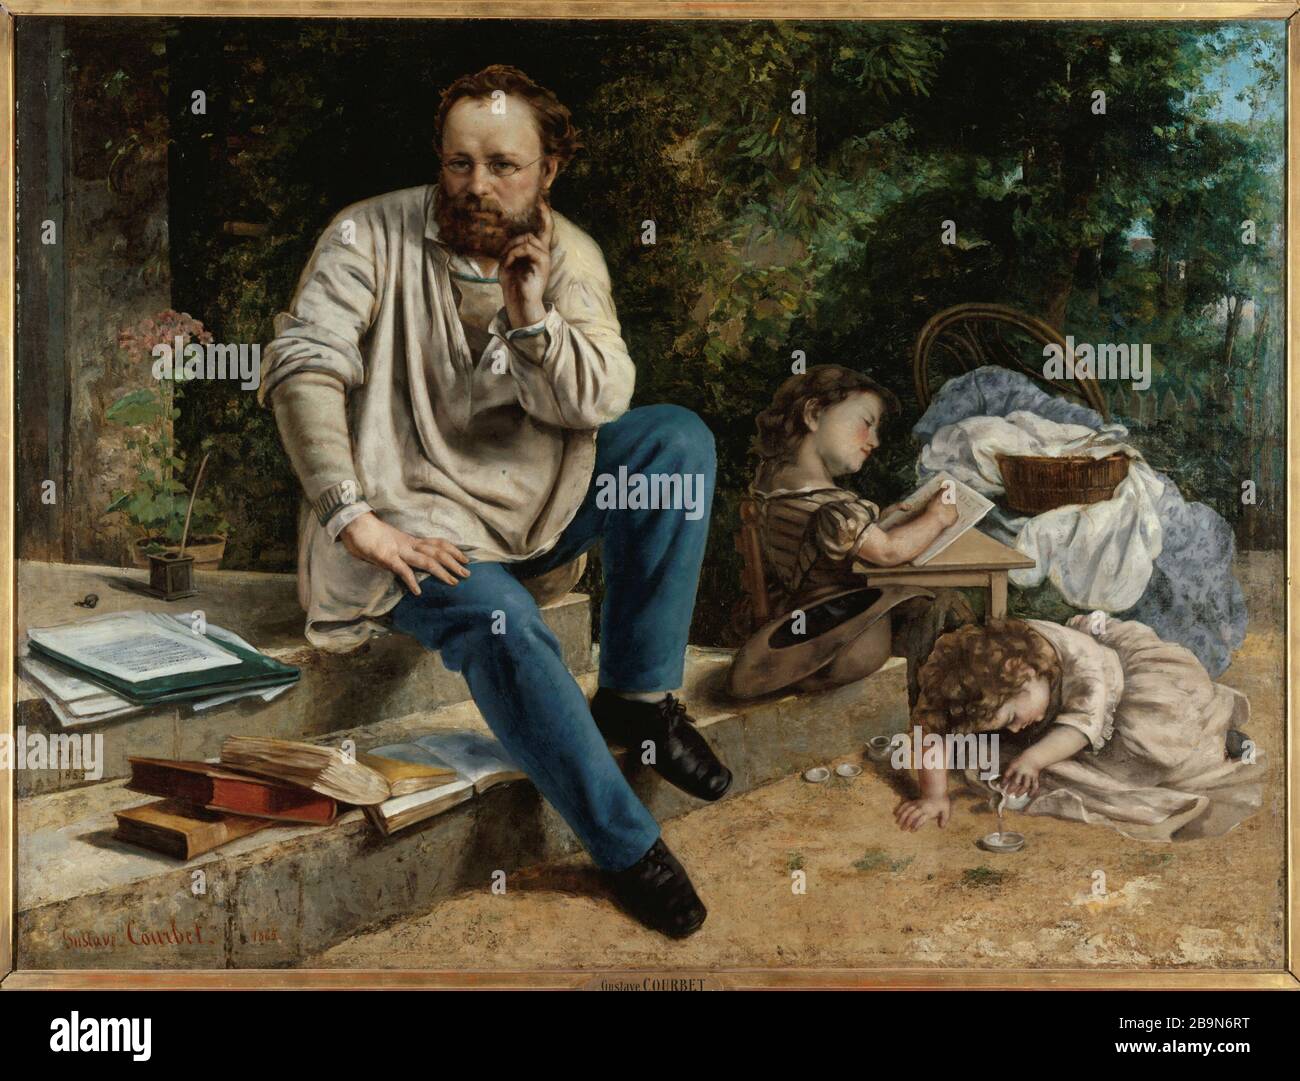 RITRATTO PROUDHON E I SUOI FIGLI Gustave Courbet (1819-1877). "Portrait de Proudhon et de ses enfants, 1865". Huile sur toile. Parigi, musée des Beaux-Arts de la Ville de Paris, Petit Palais. Foto Stock